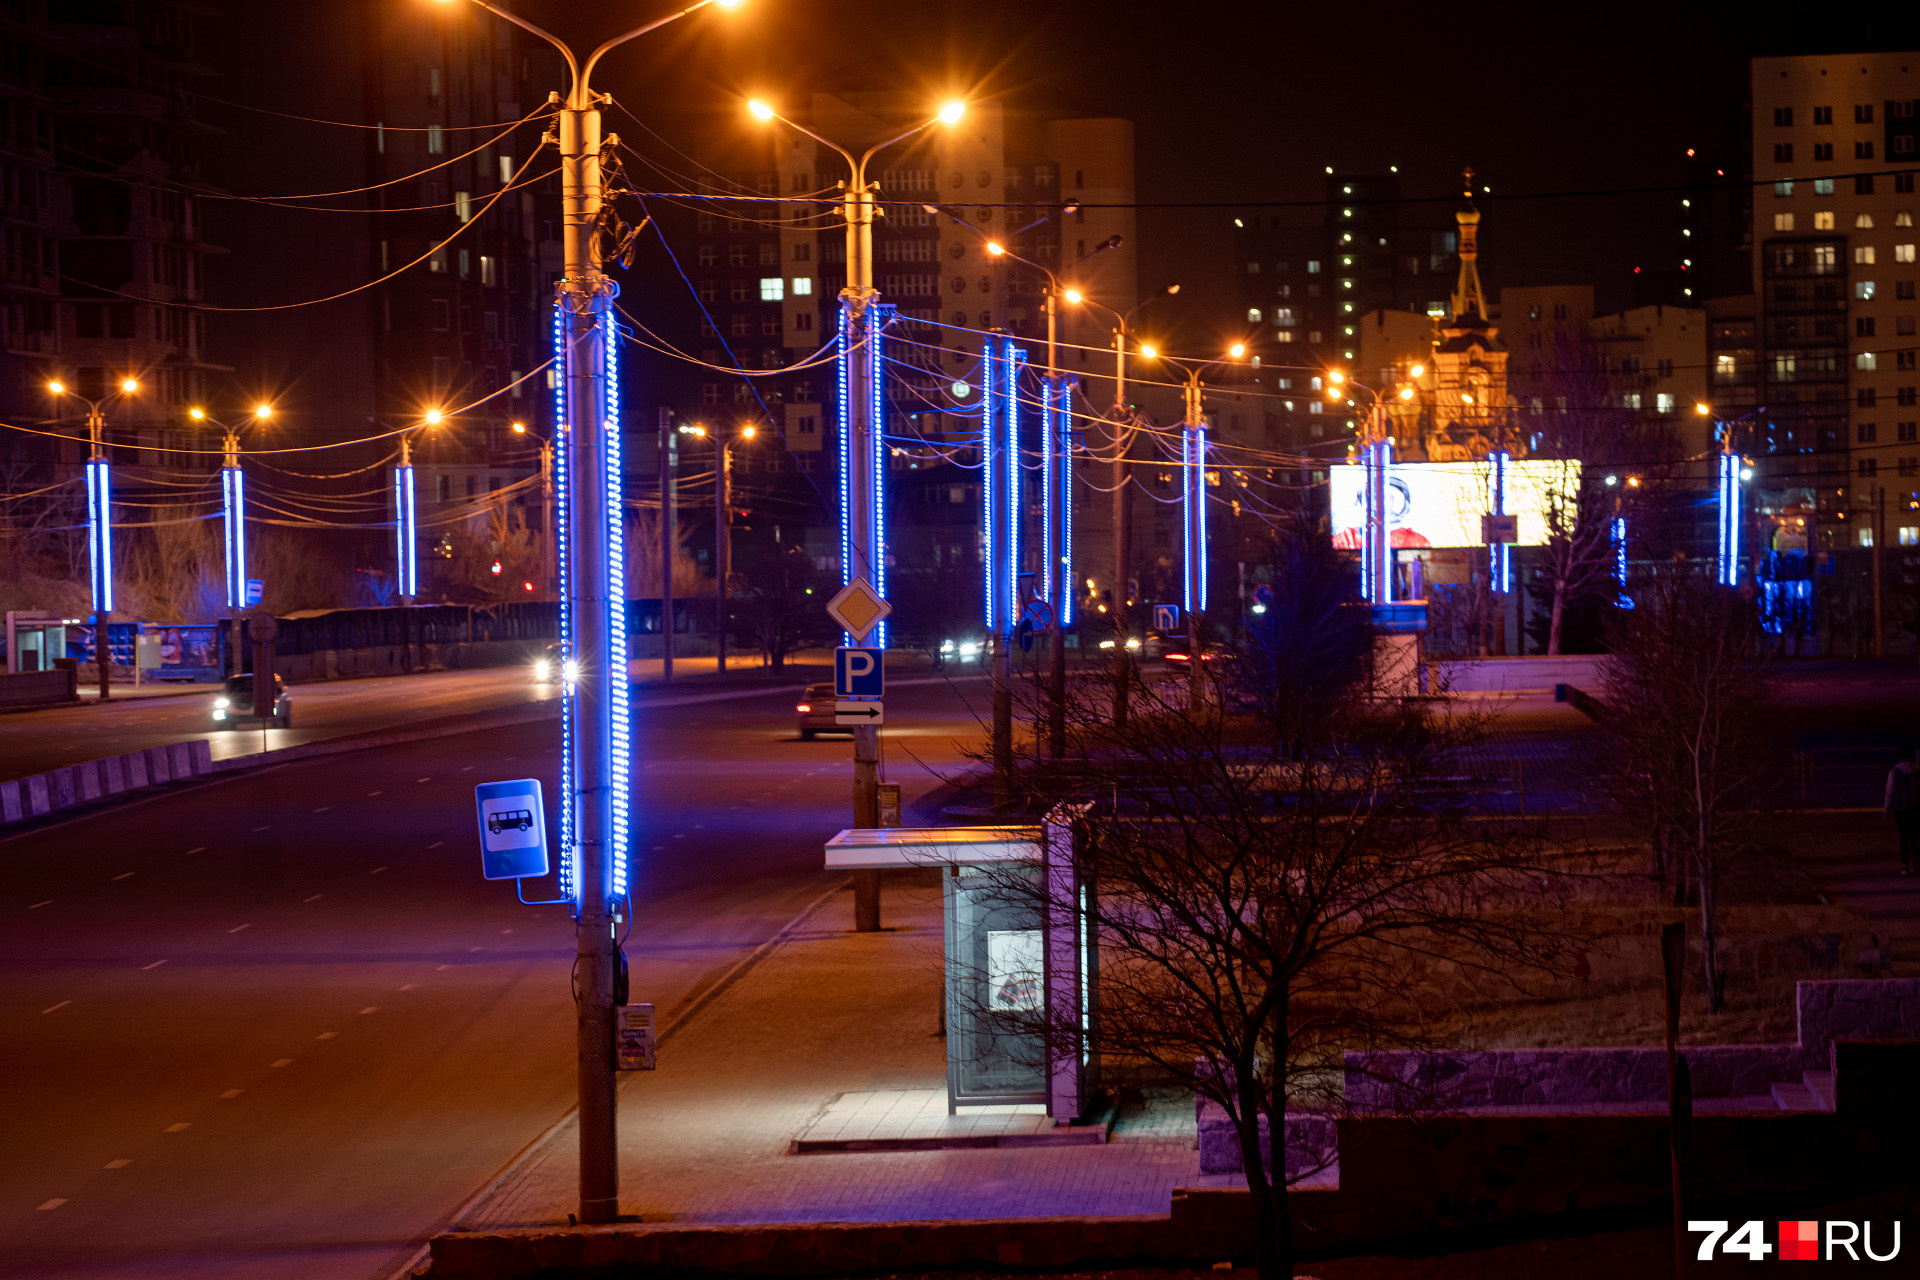 Светильники на столбах собираются увязать с городской иллюминацией и архитектурной подсветкой зданий